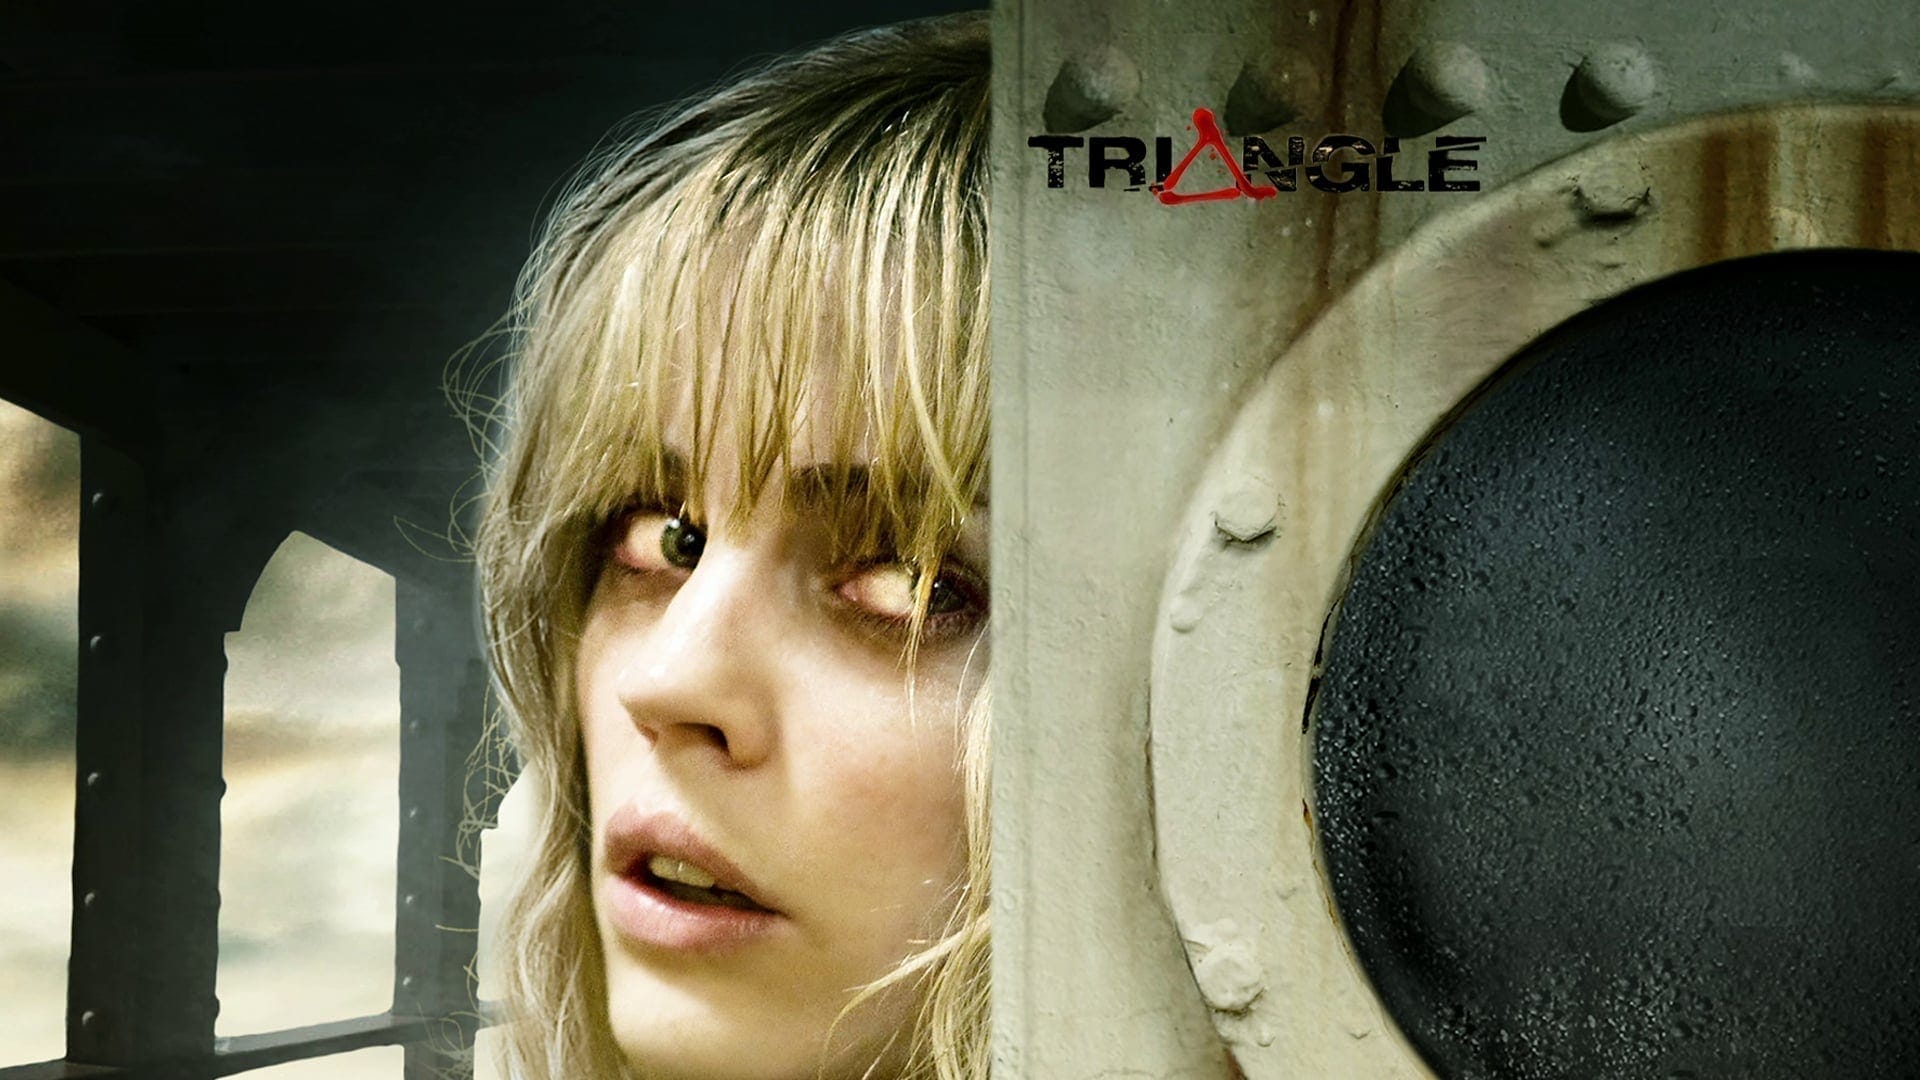 Imagen de la película "Triangle"